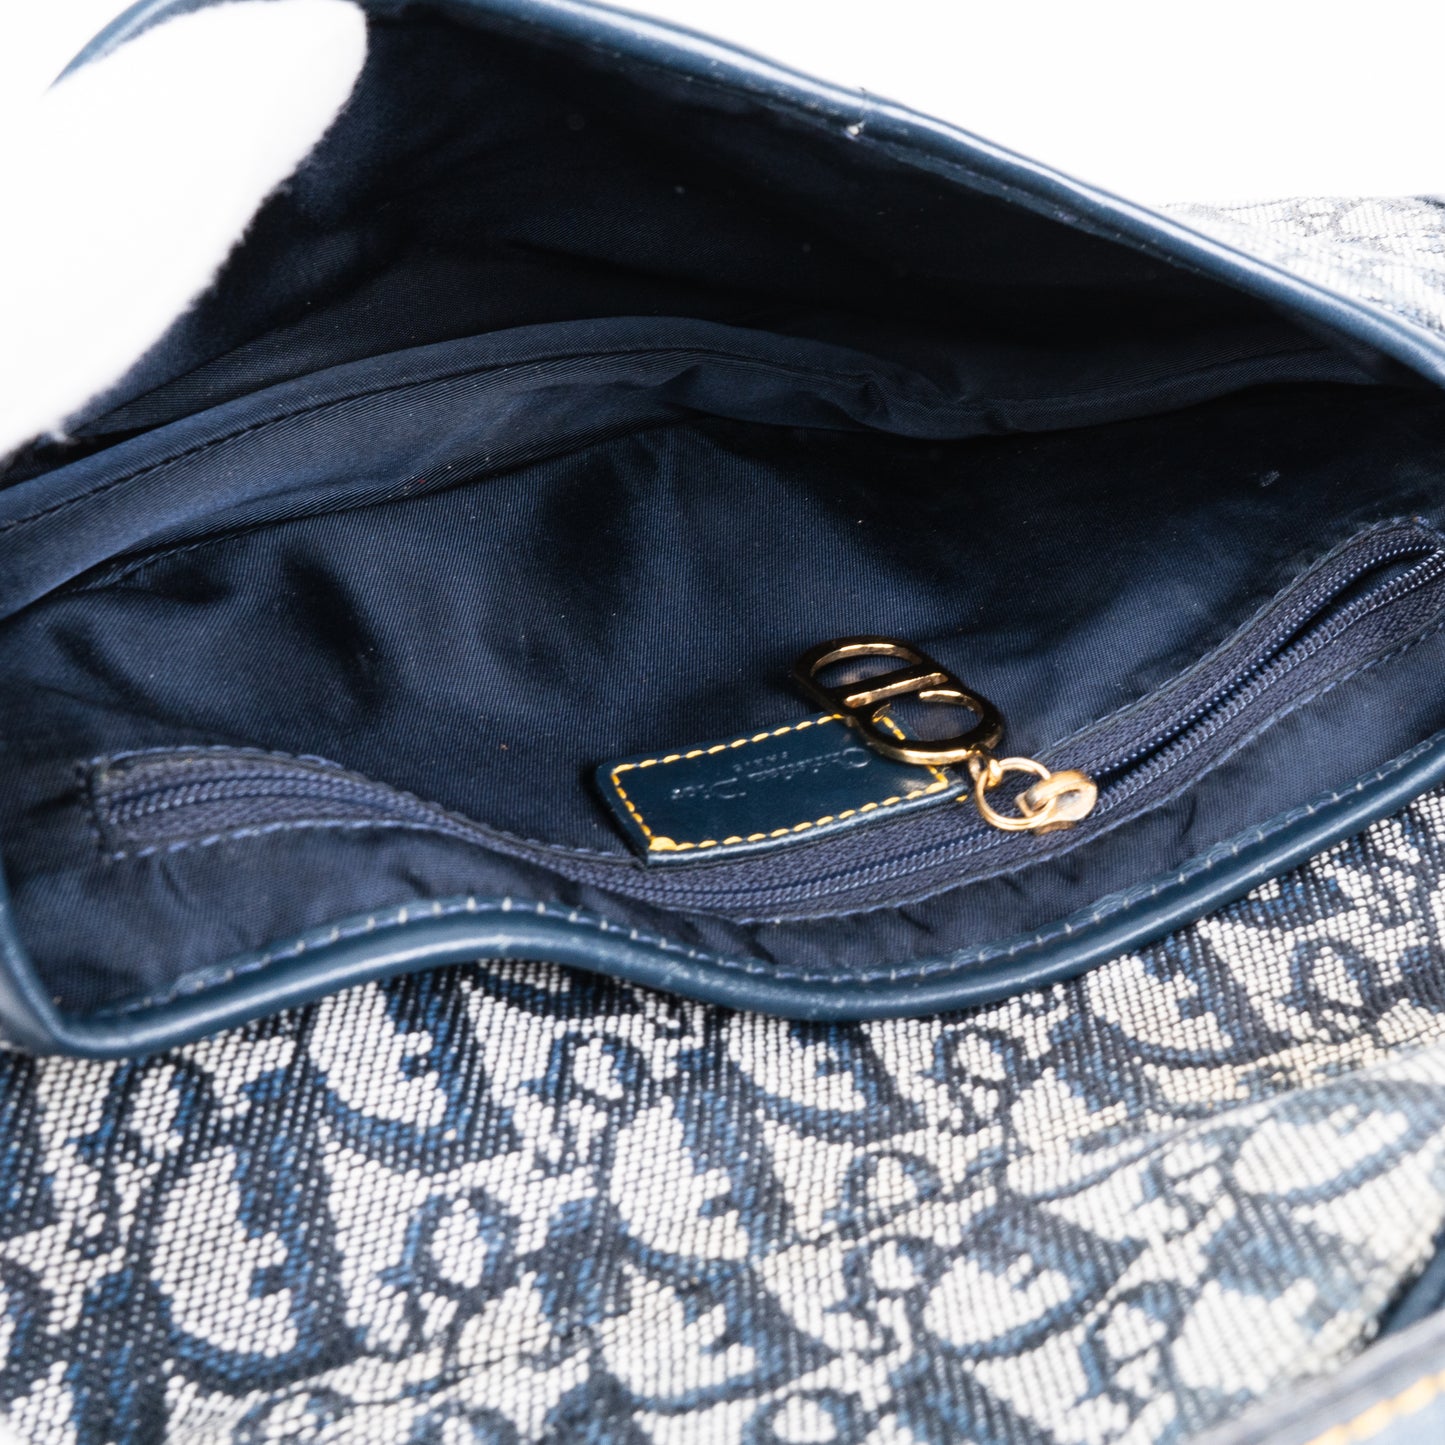 Christian Dior Oblique Trotter Saddle Bag